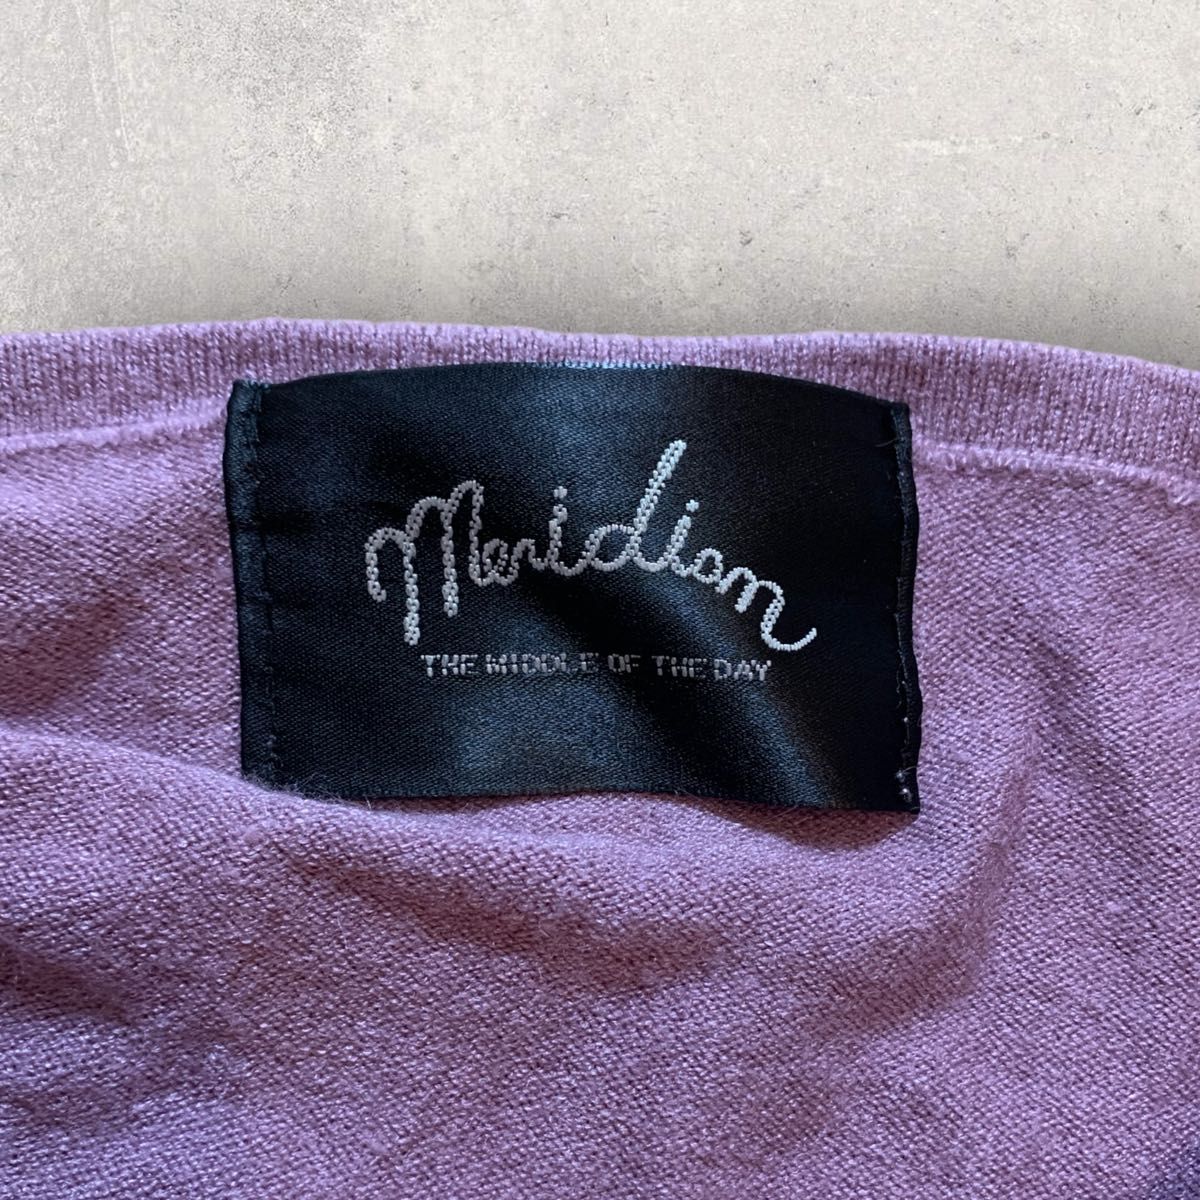 Meridian メリディアン バルーン袖 刺繍カーディガン パープル